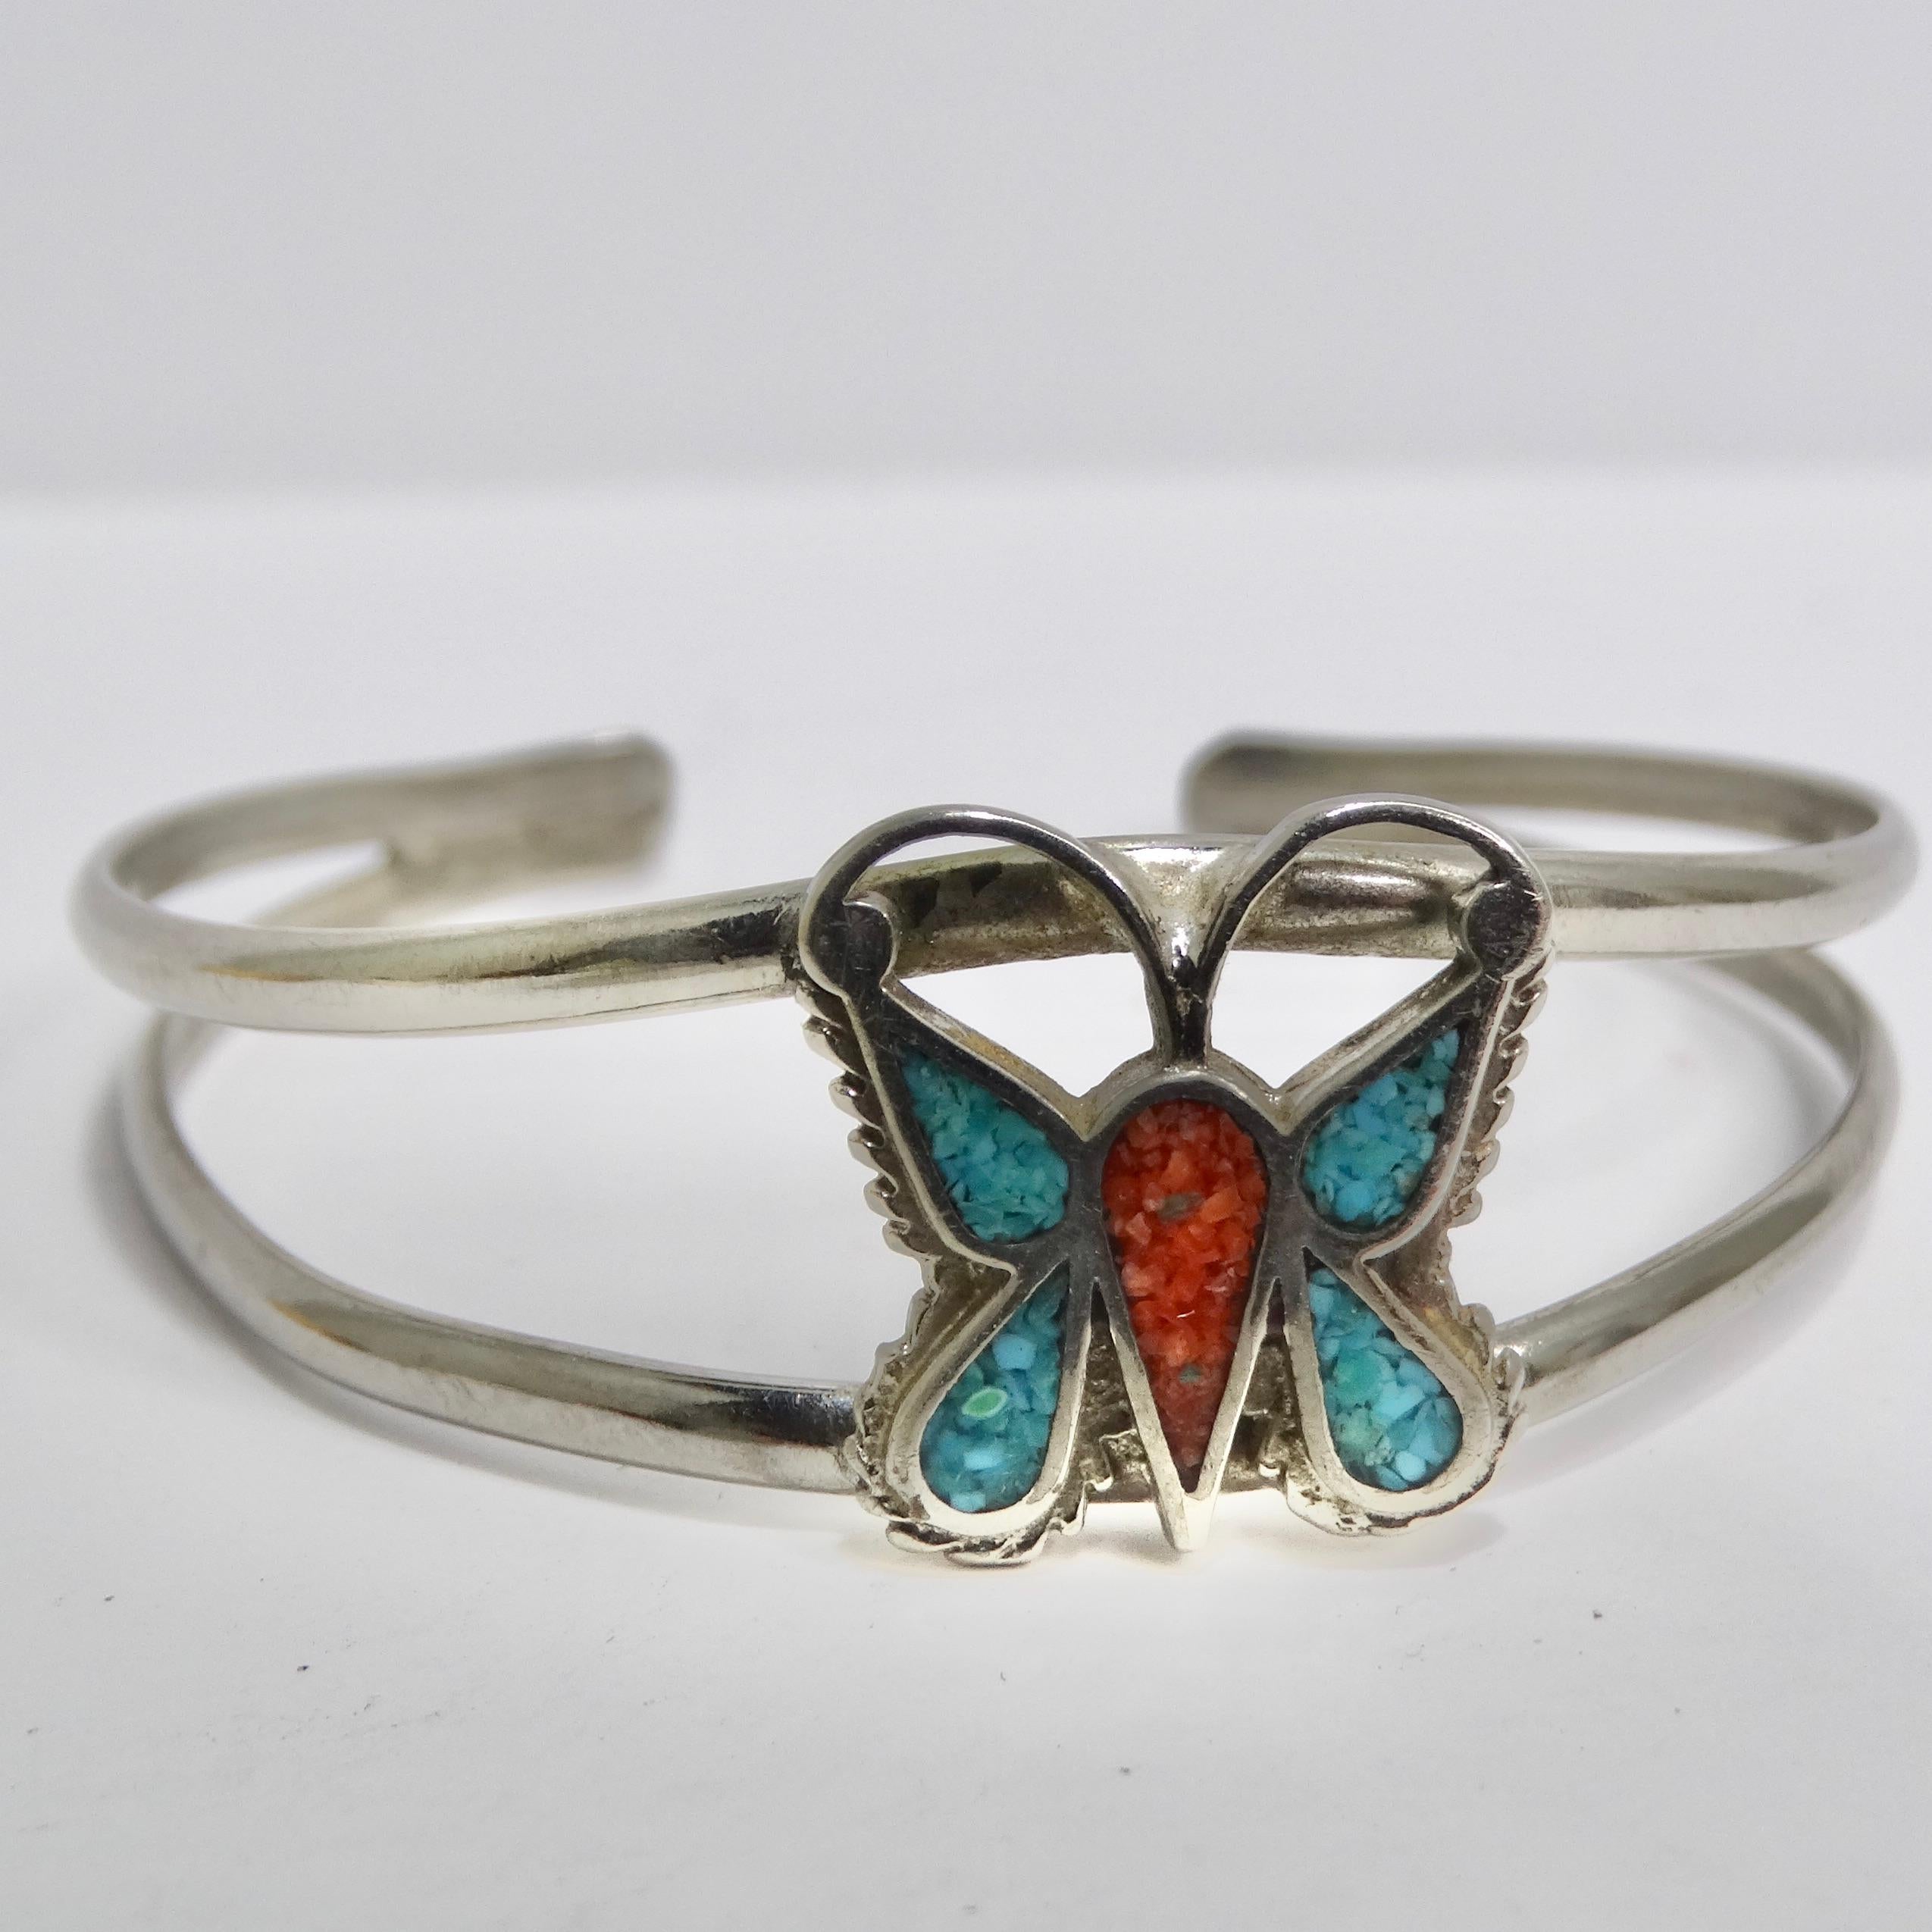 Wir präsentieren ein zeitloses Stück indianischer Kunst: das 1950 Navajo Silver Butterfly Cuff Bracelet. Dieses exquisite Armband ist ein Beweis für die handwerkliche Kunstfertigkeit und die kulturelle Bedeutung von Navajo-Schmuck, und es wird Ihr